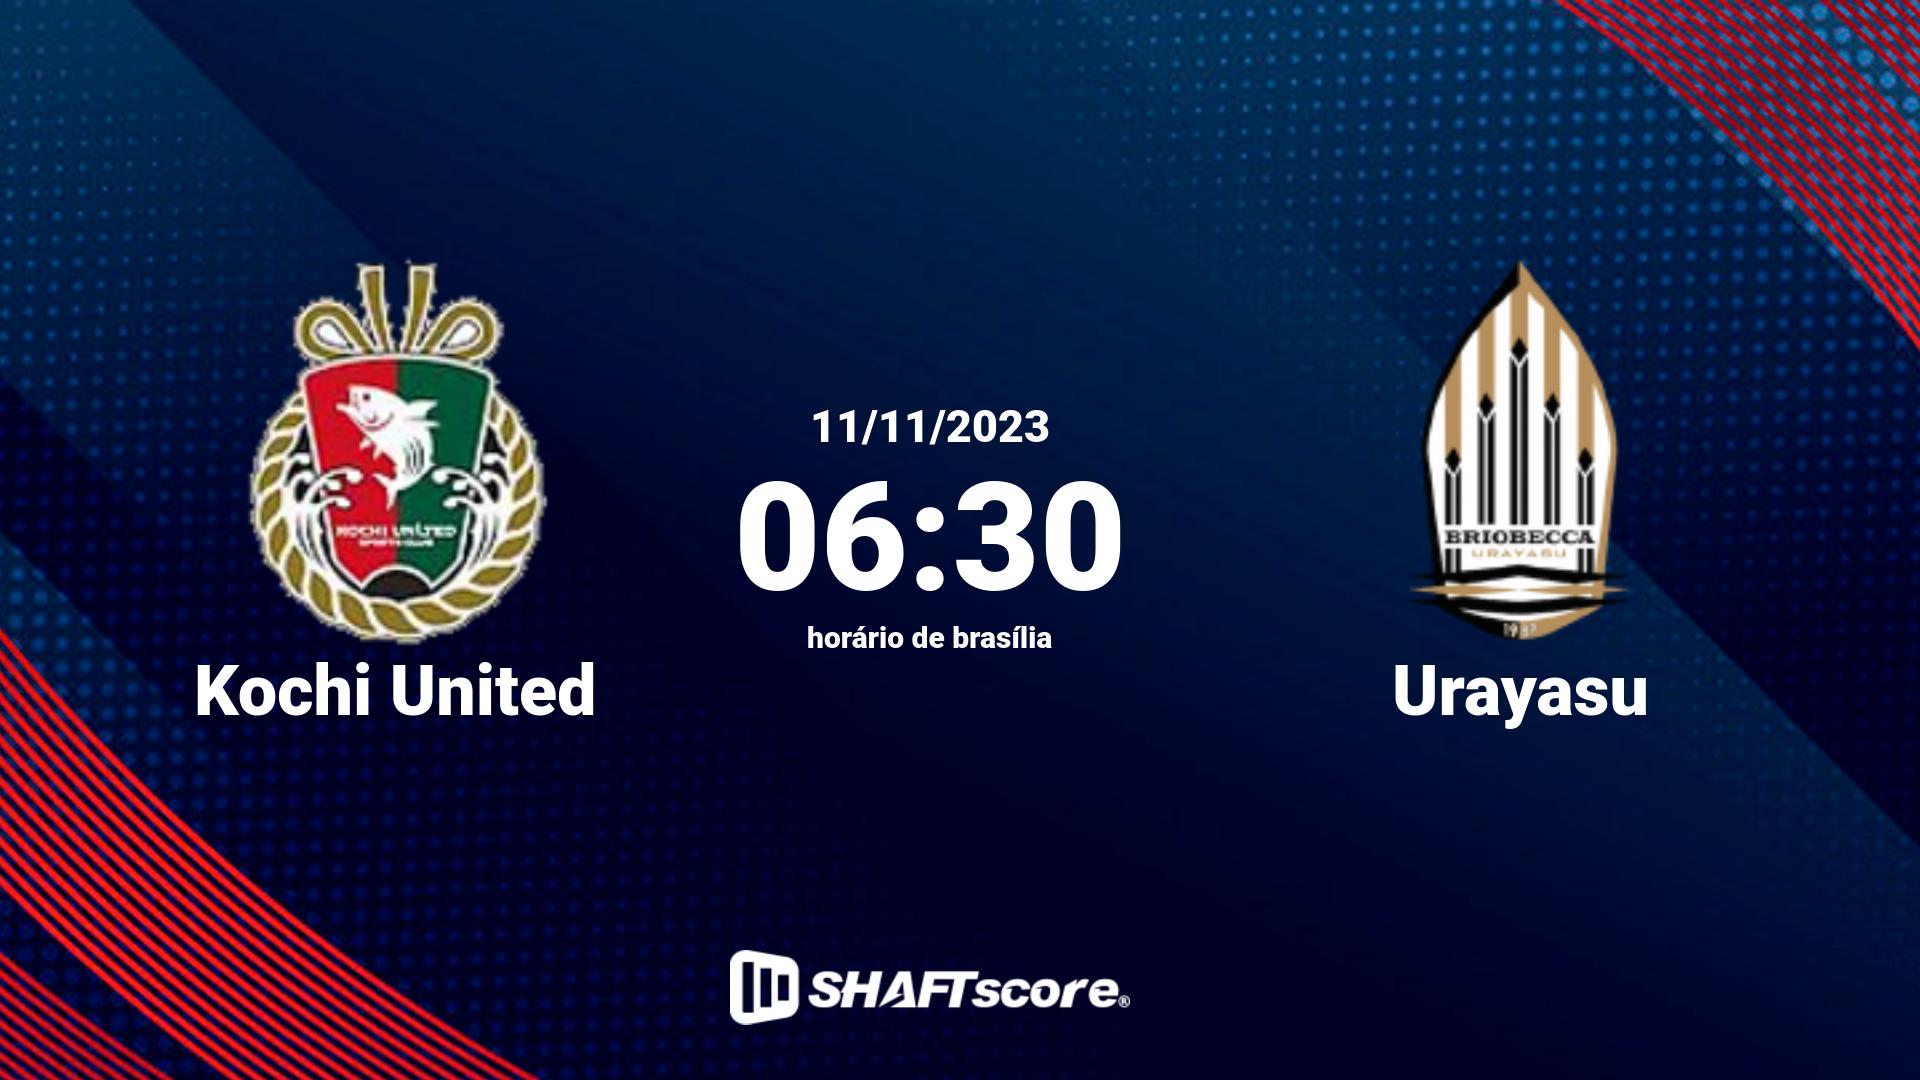 Estatísticas do jogo Kochi United vs Urayasu 11.11 06:30